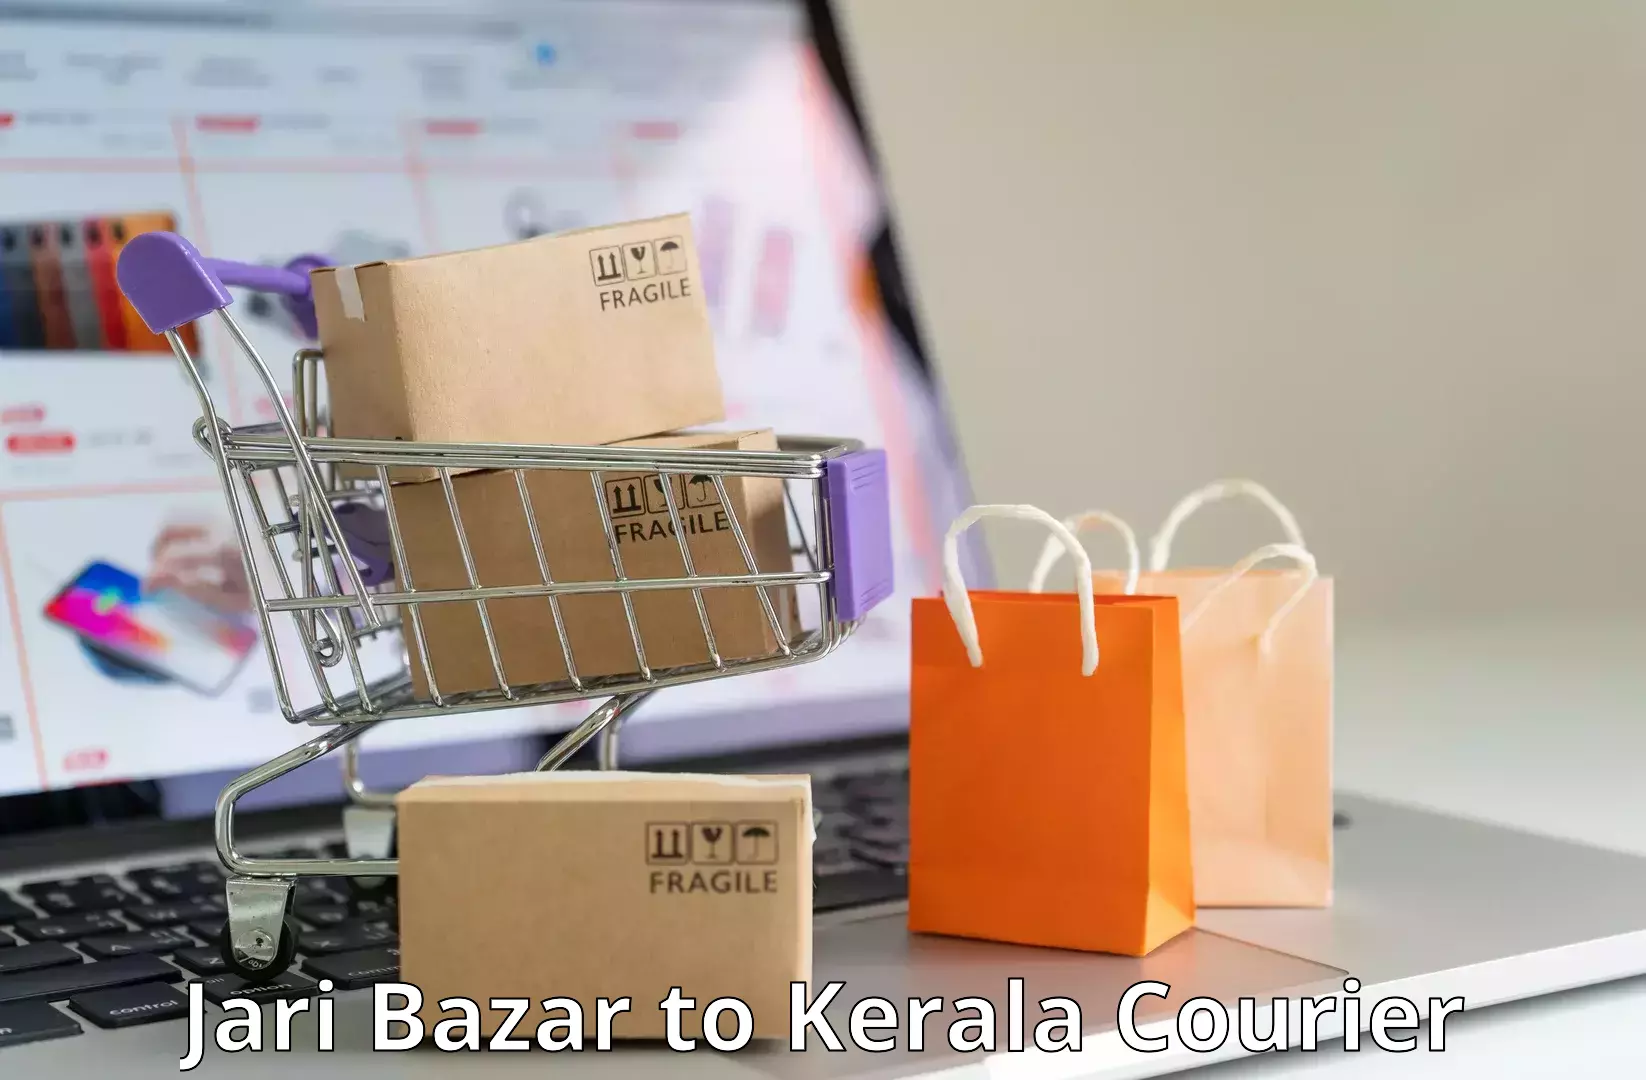 Expedited parcel delivery Jari Bazar to Kottayam